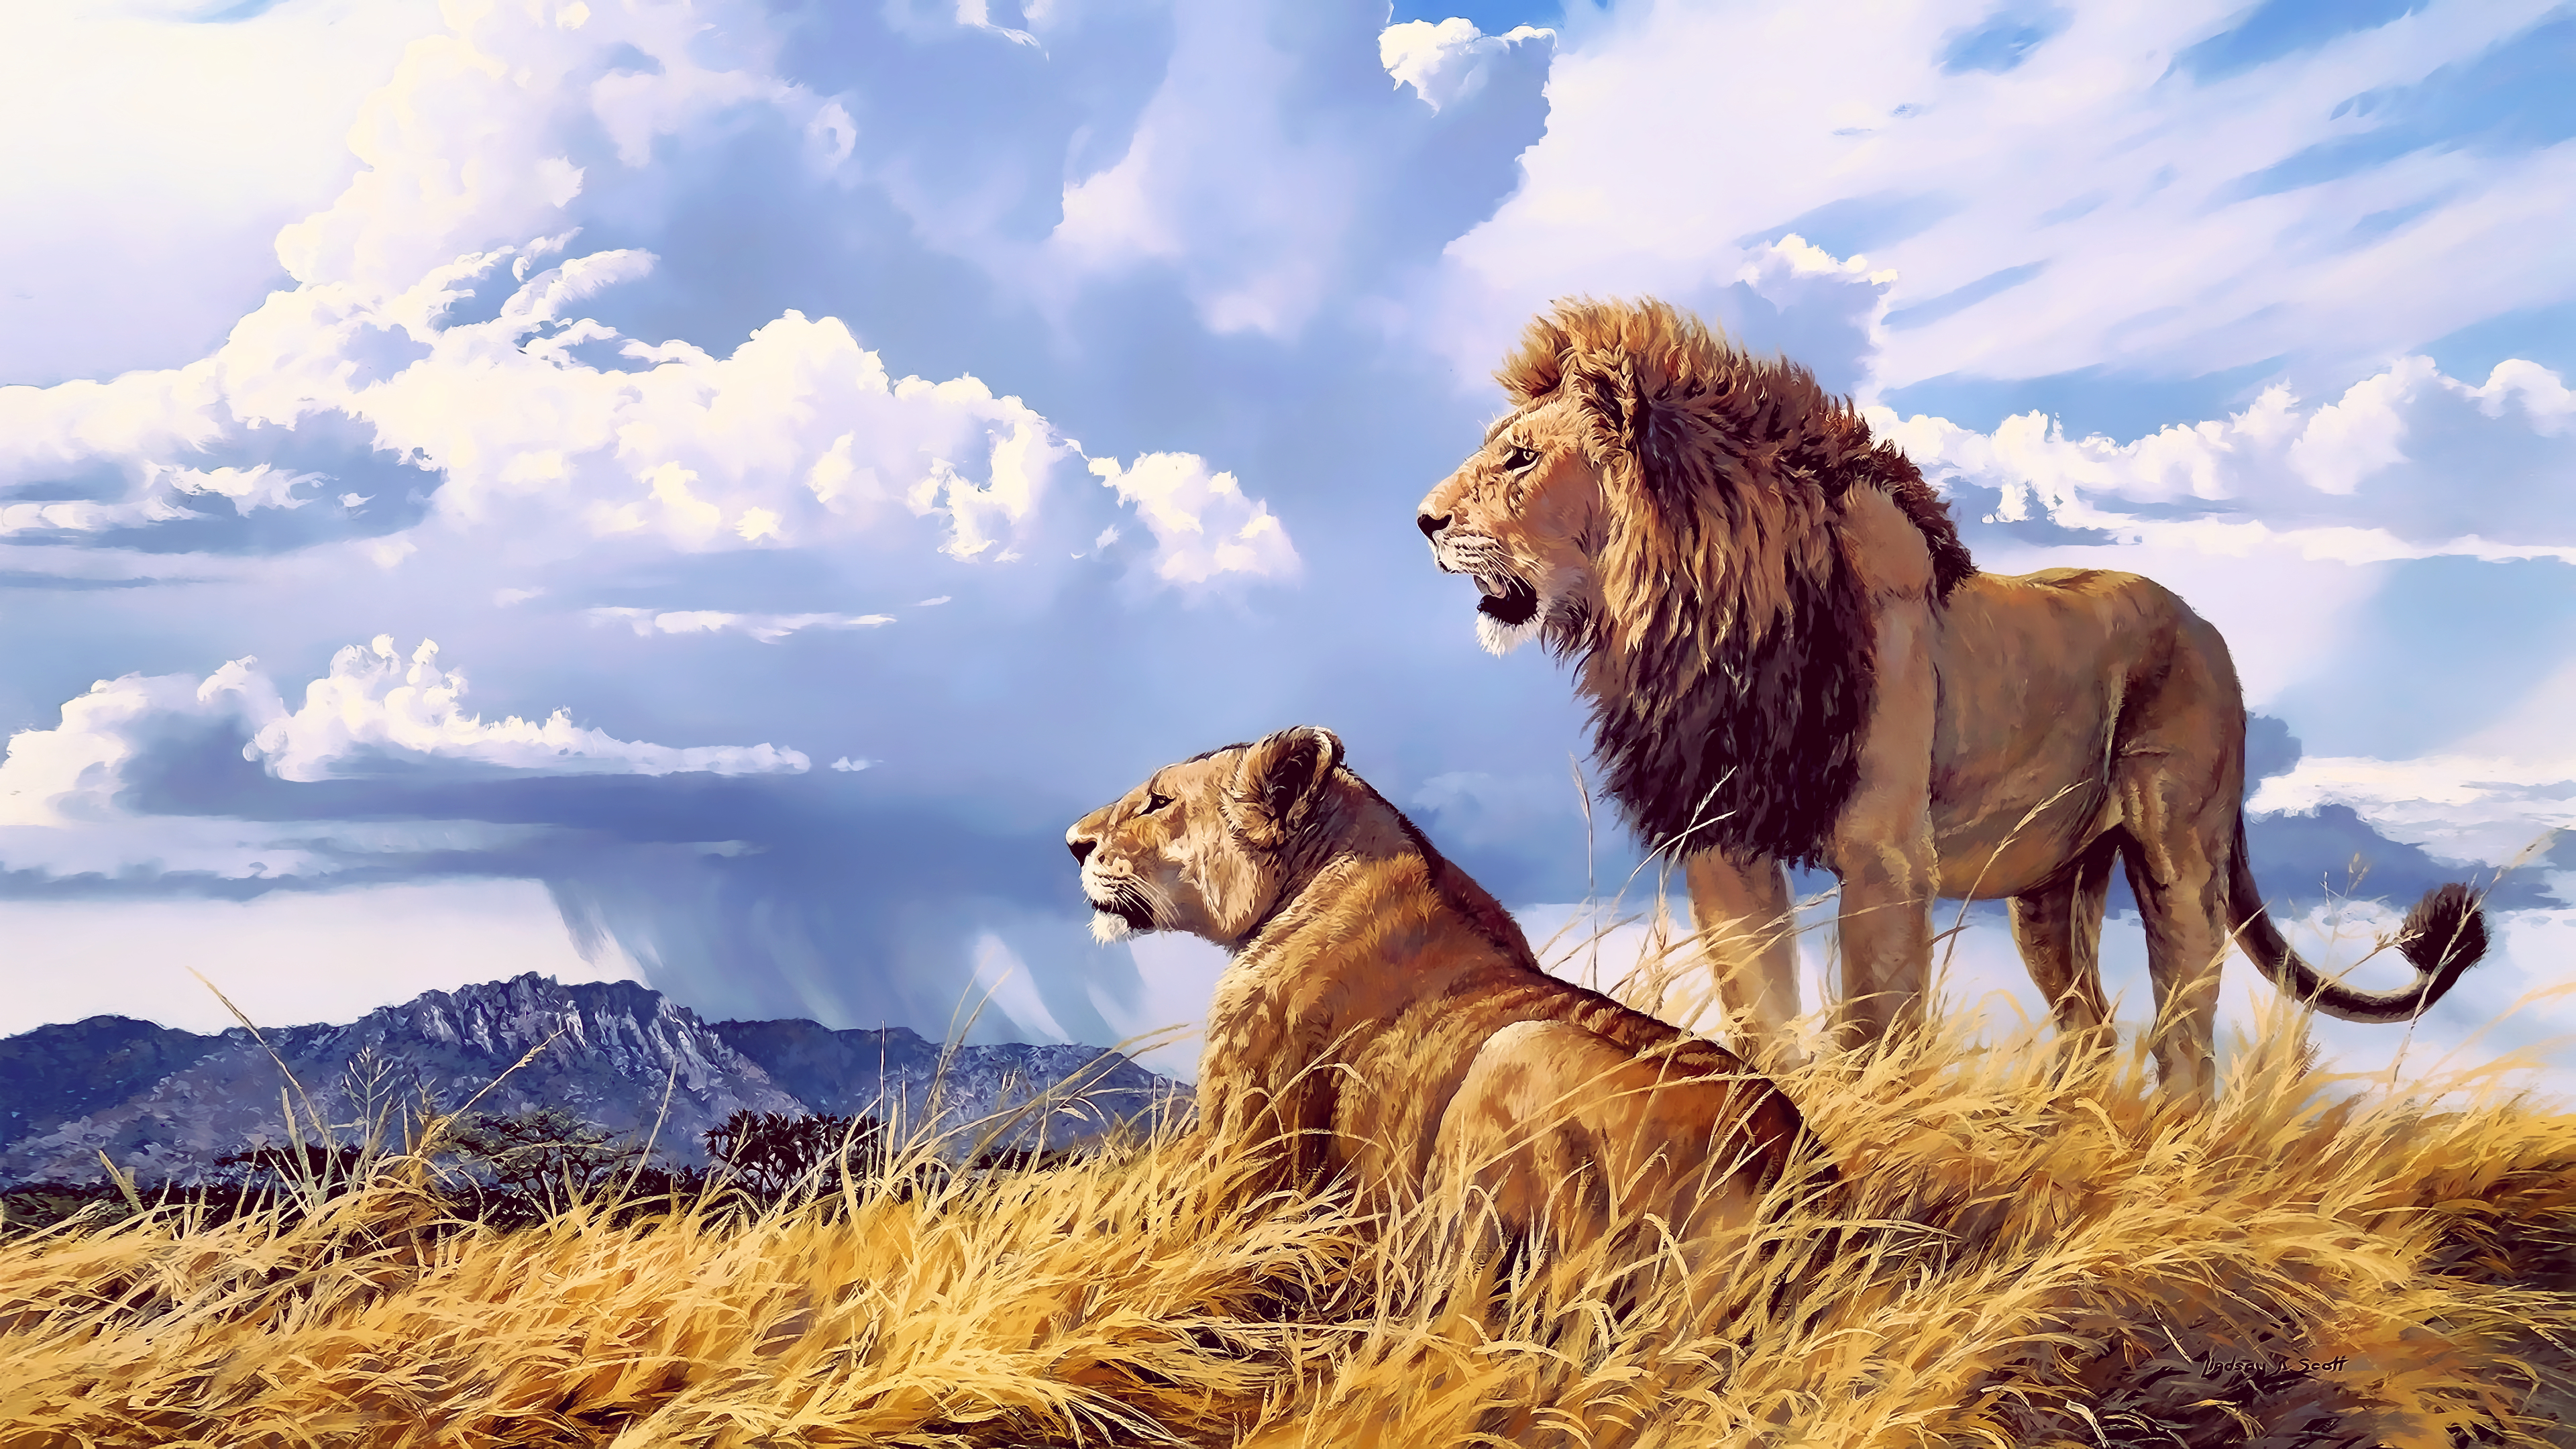 fond d'écran lion 4k,faune,lion,lion masai,félidés,animal terrestre